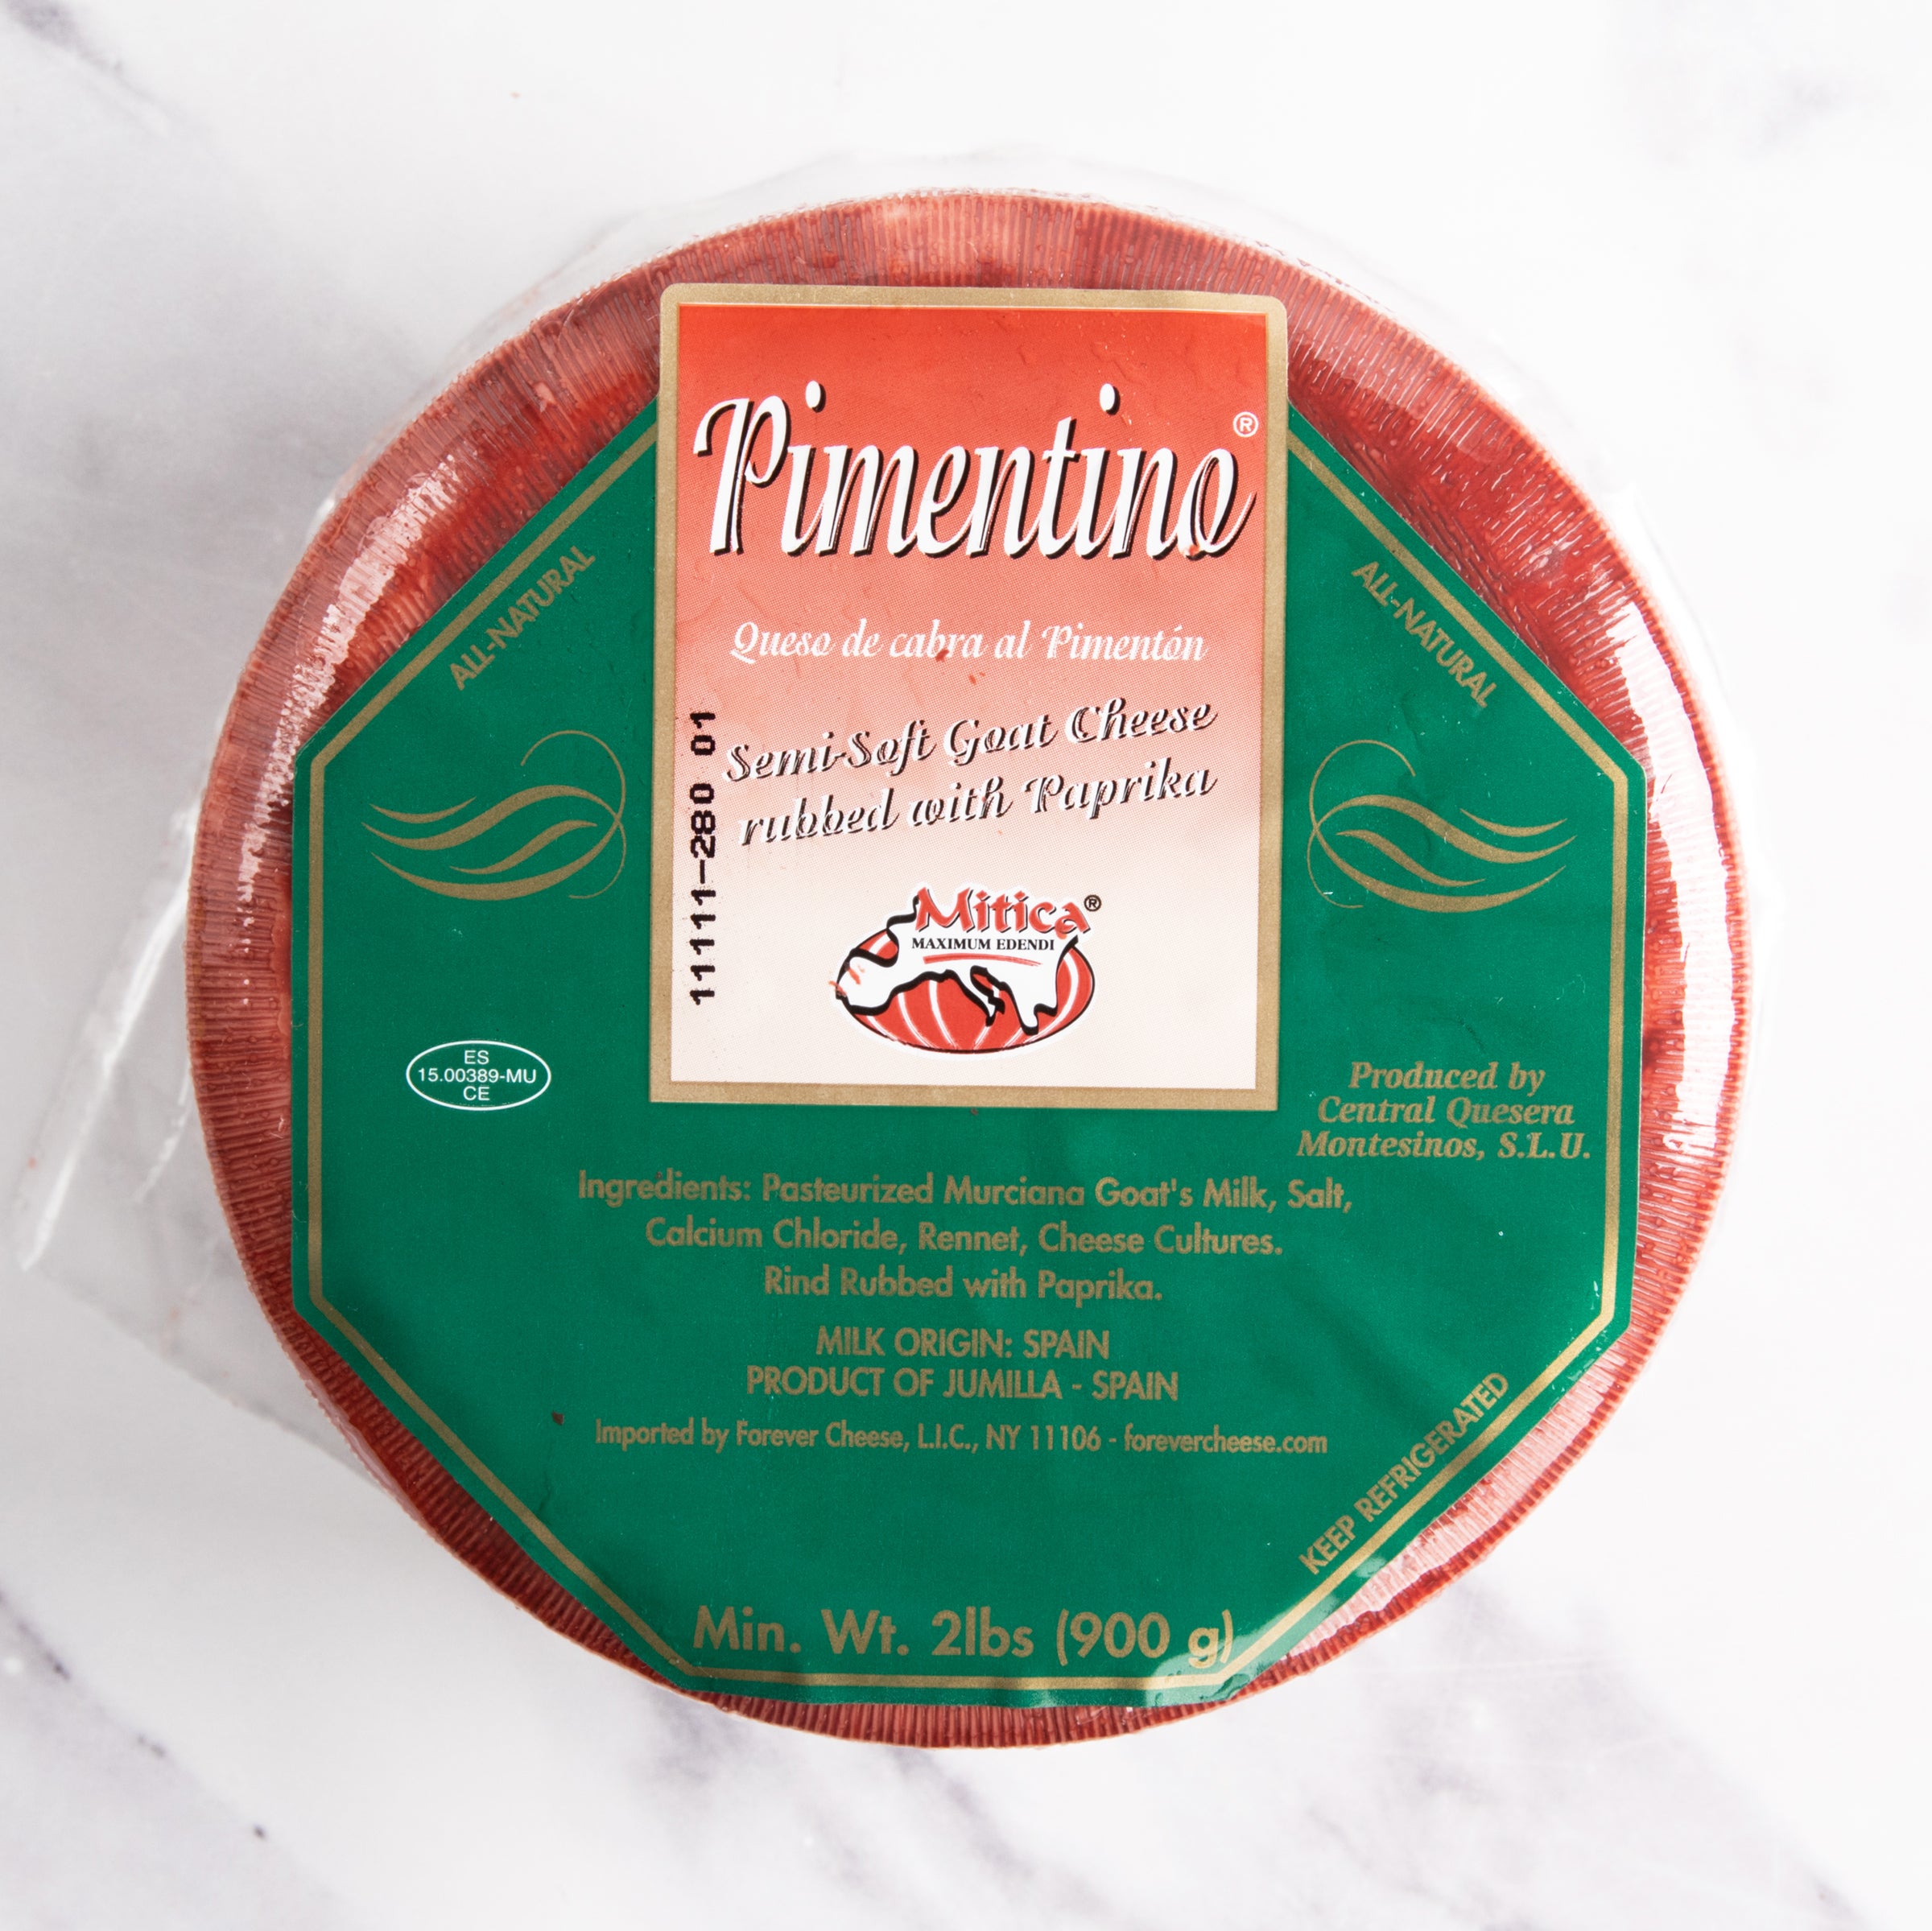 igourmet_2061_Pimentino-Paprika Rubbed Murcia_Pimentino_Cheese